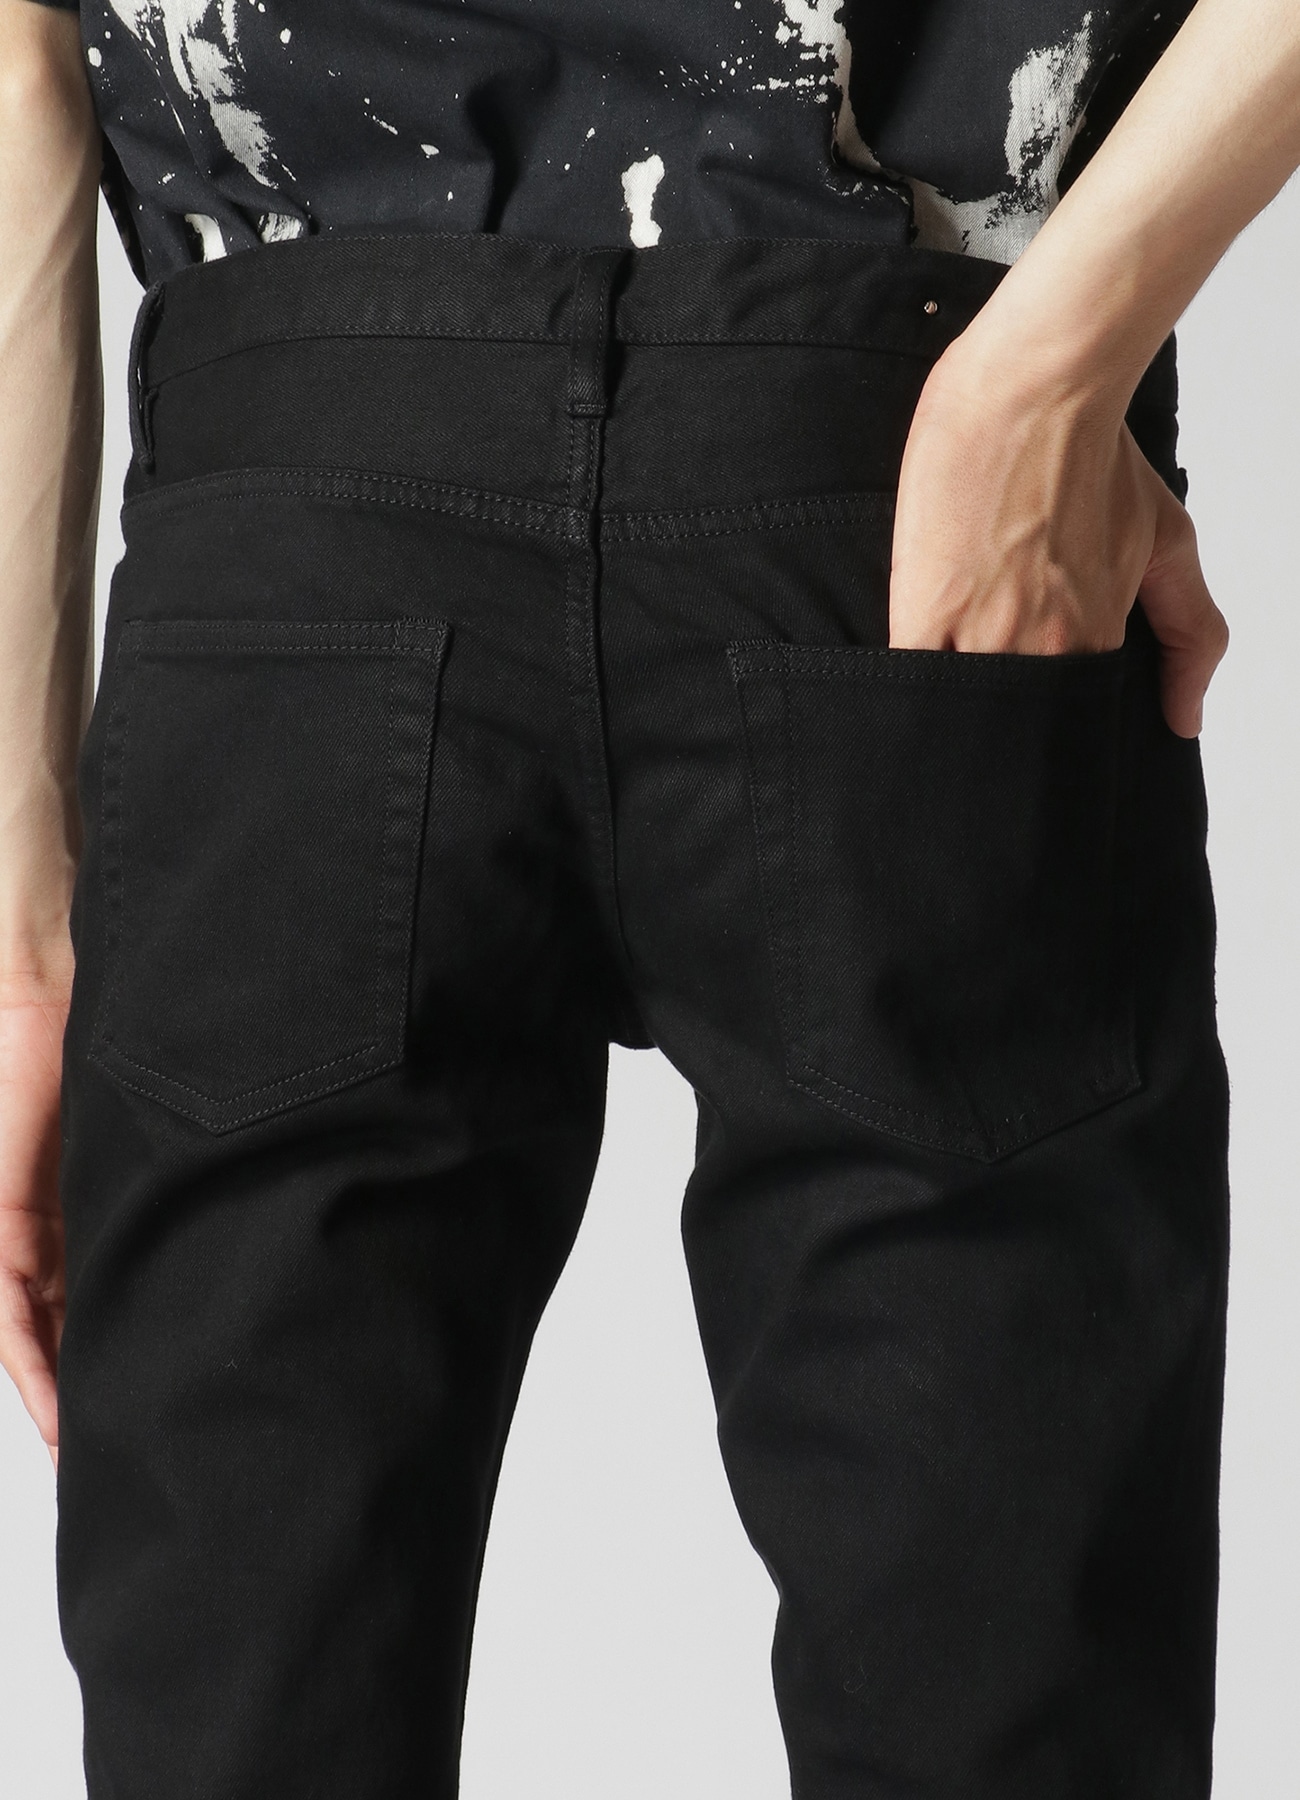 WILDSIDE × MINEDENIM KSL S.Slim STR 5pocket Skinny Pants(30 BLACK 